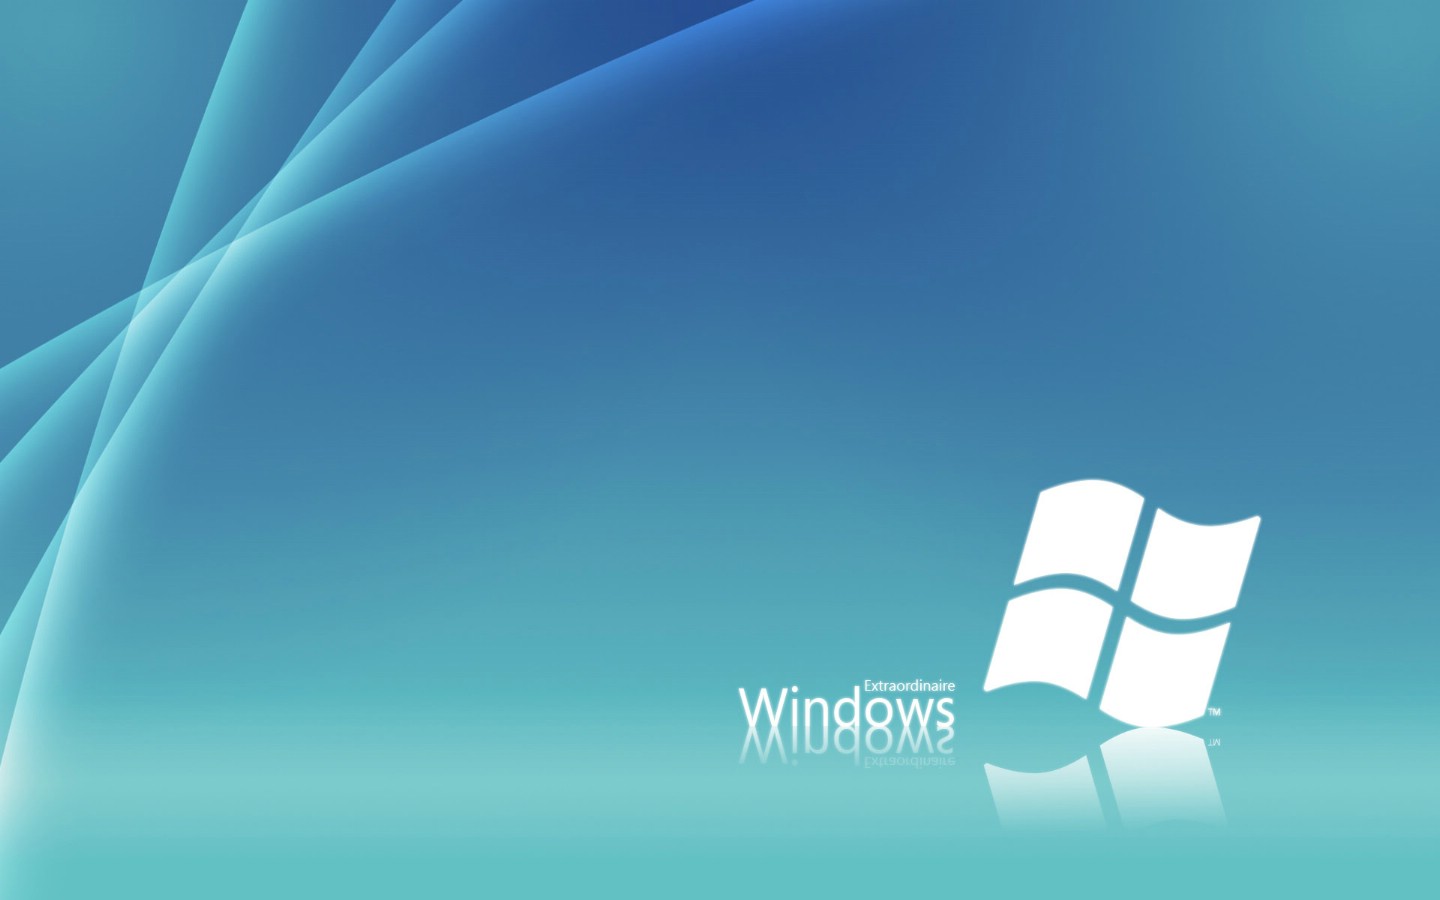 壁纸1440x900Windows7 6 3壁纸 Windows7壁纸 Windows7图片 Windows7素材 系统壁纸 系统图库 系统图片素材桌面壁纸